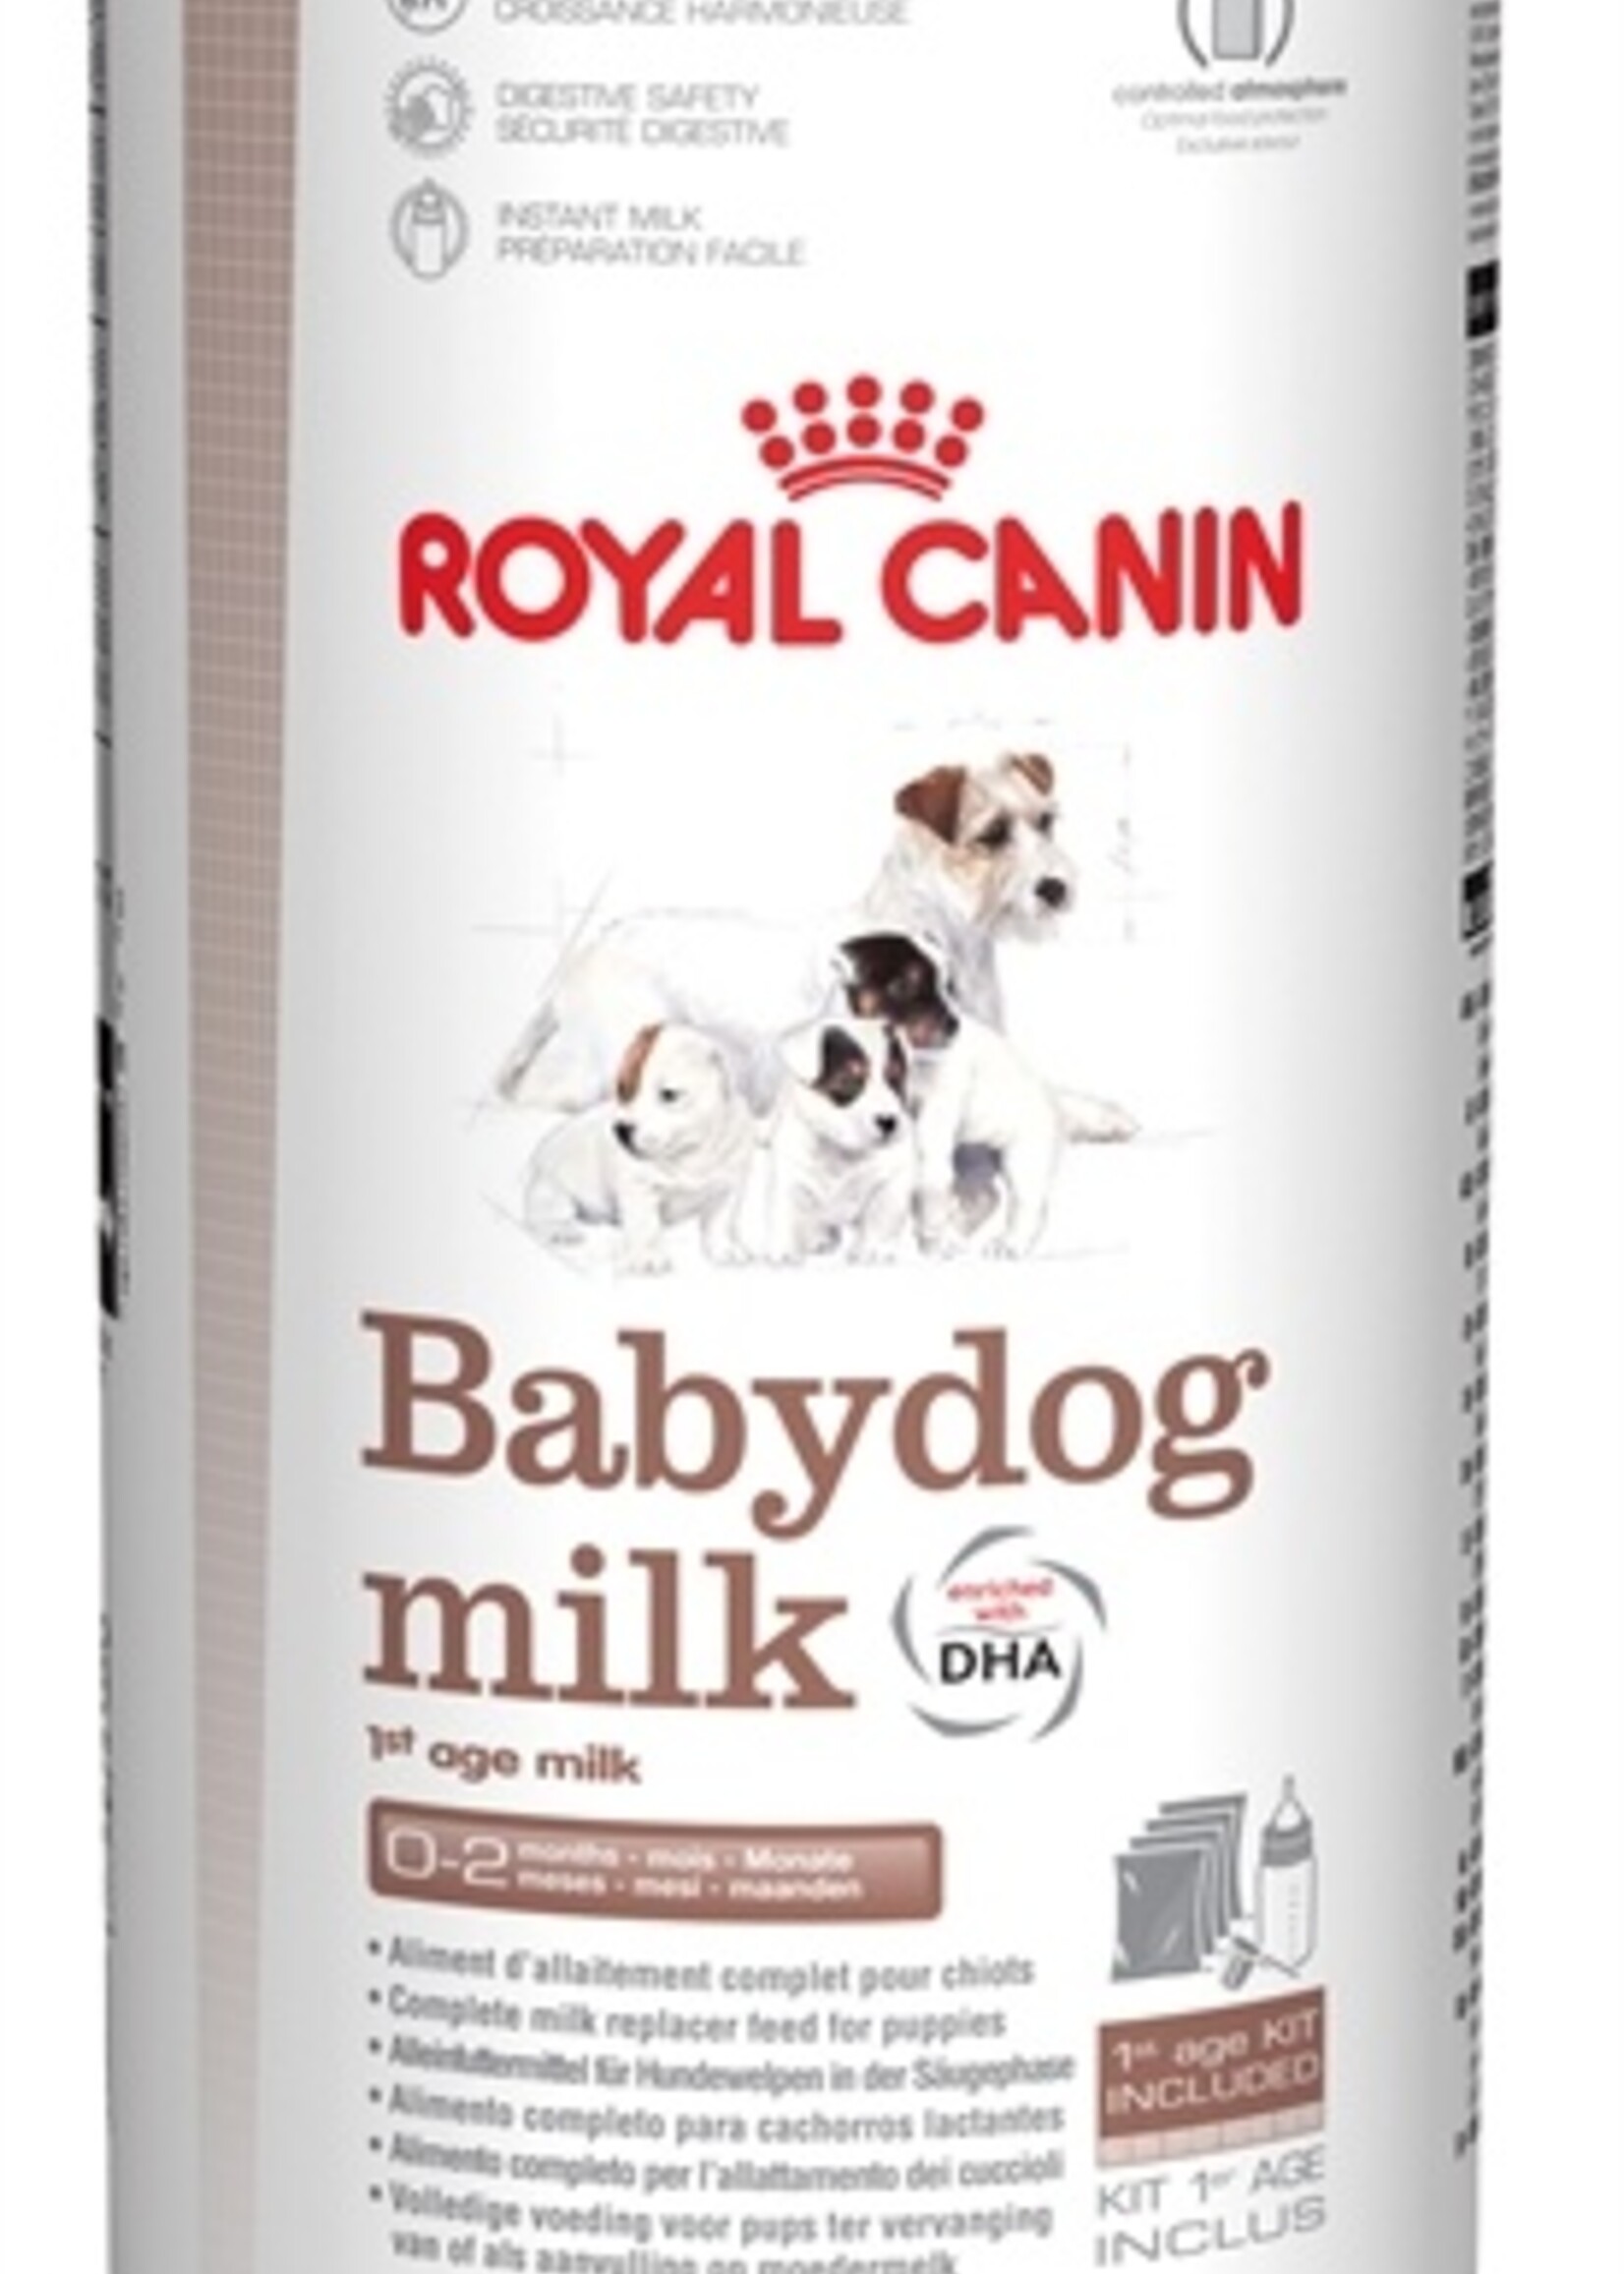 Royal canin Royal canin babydog milk